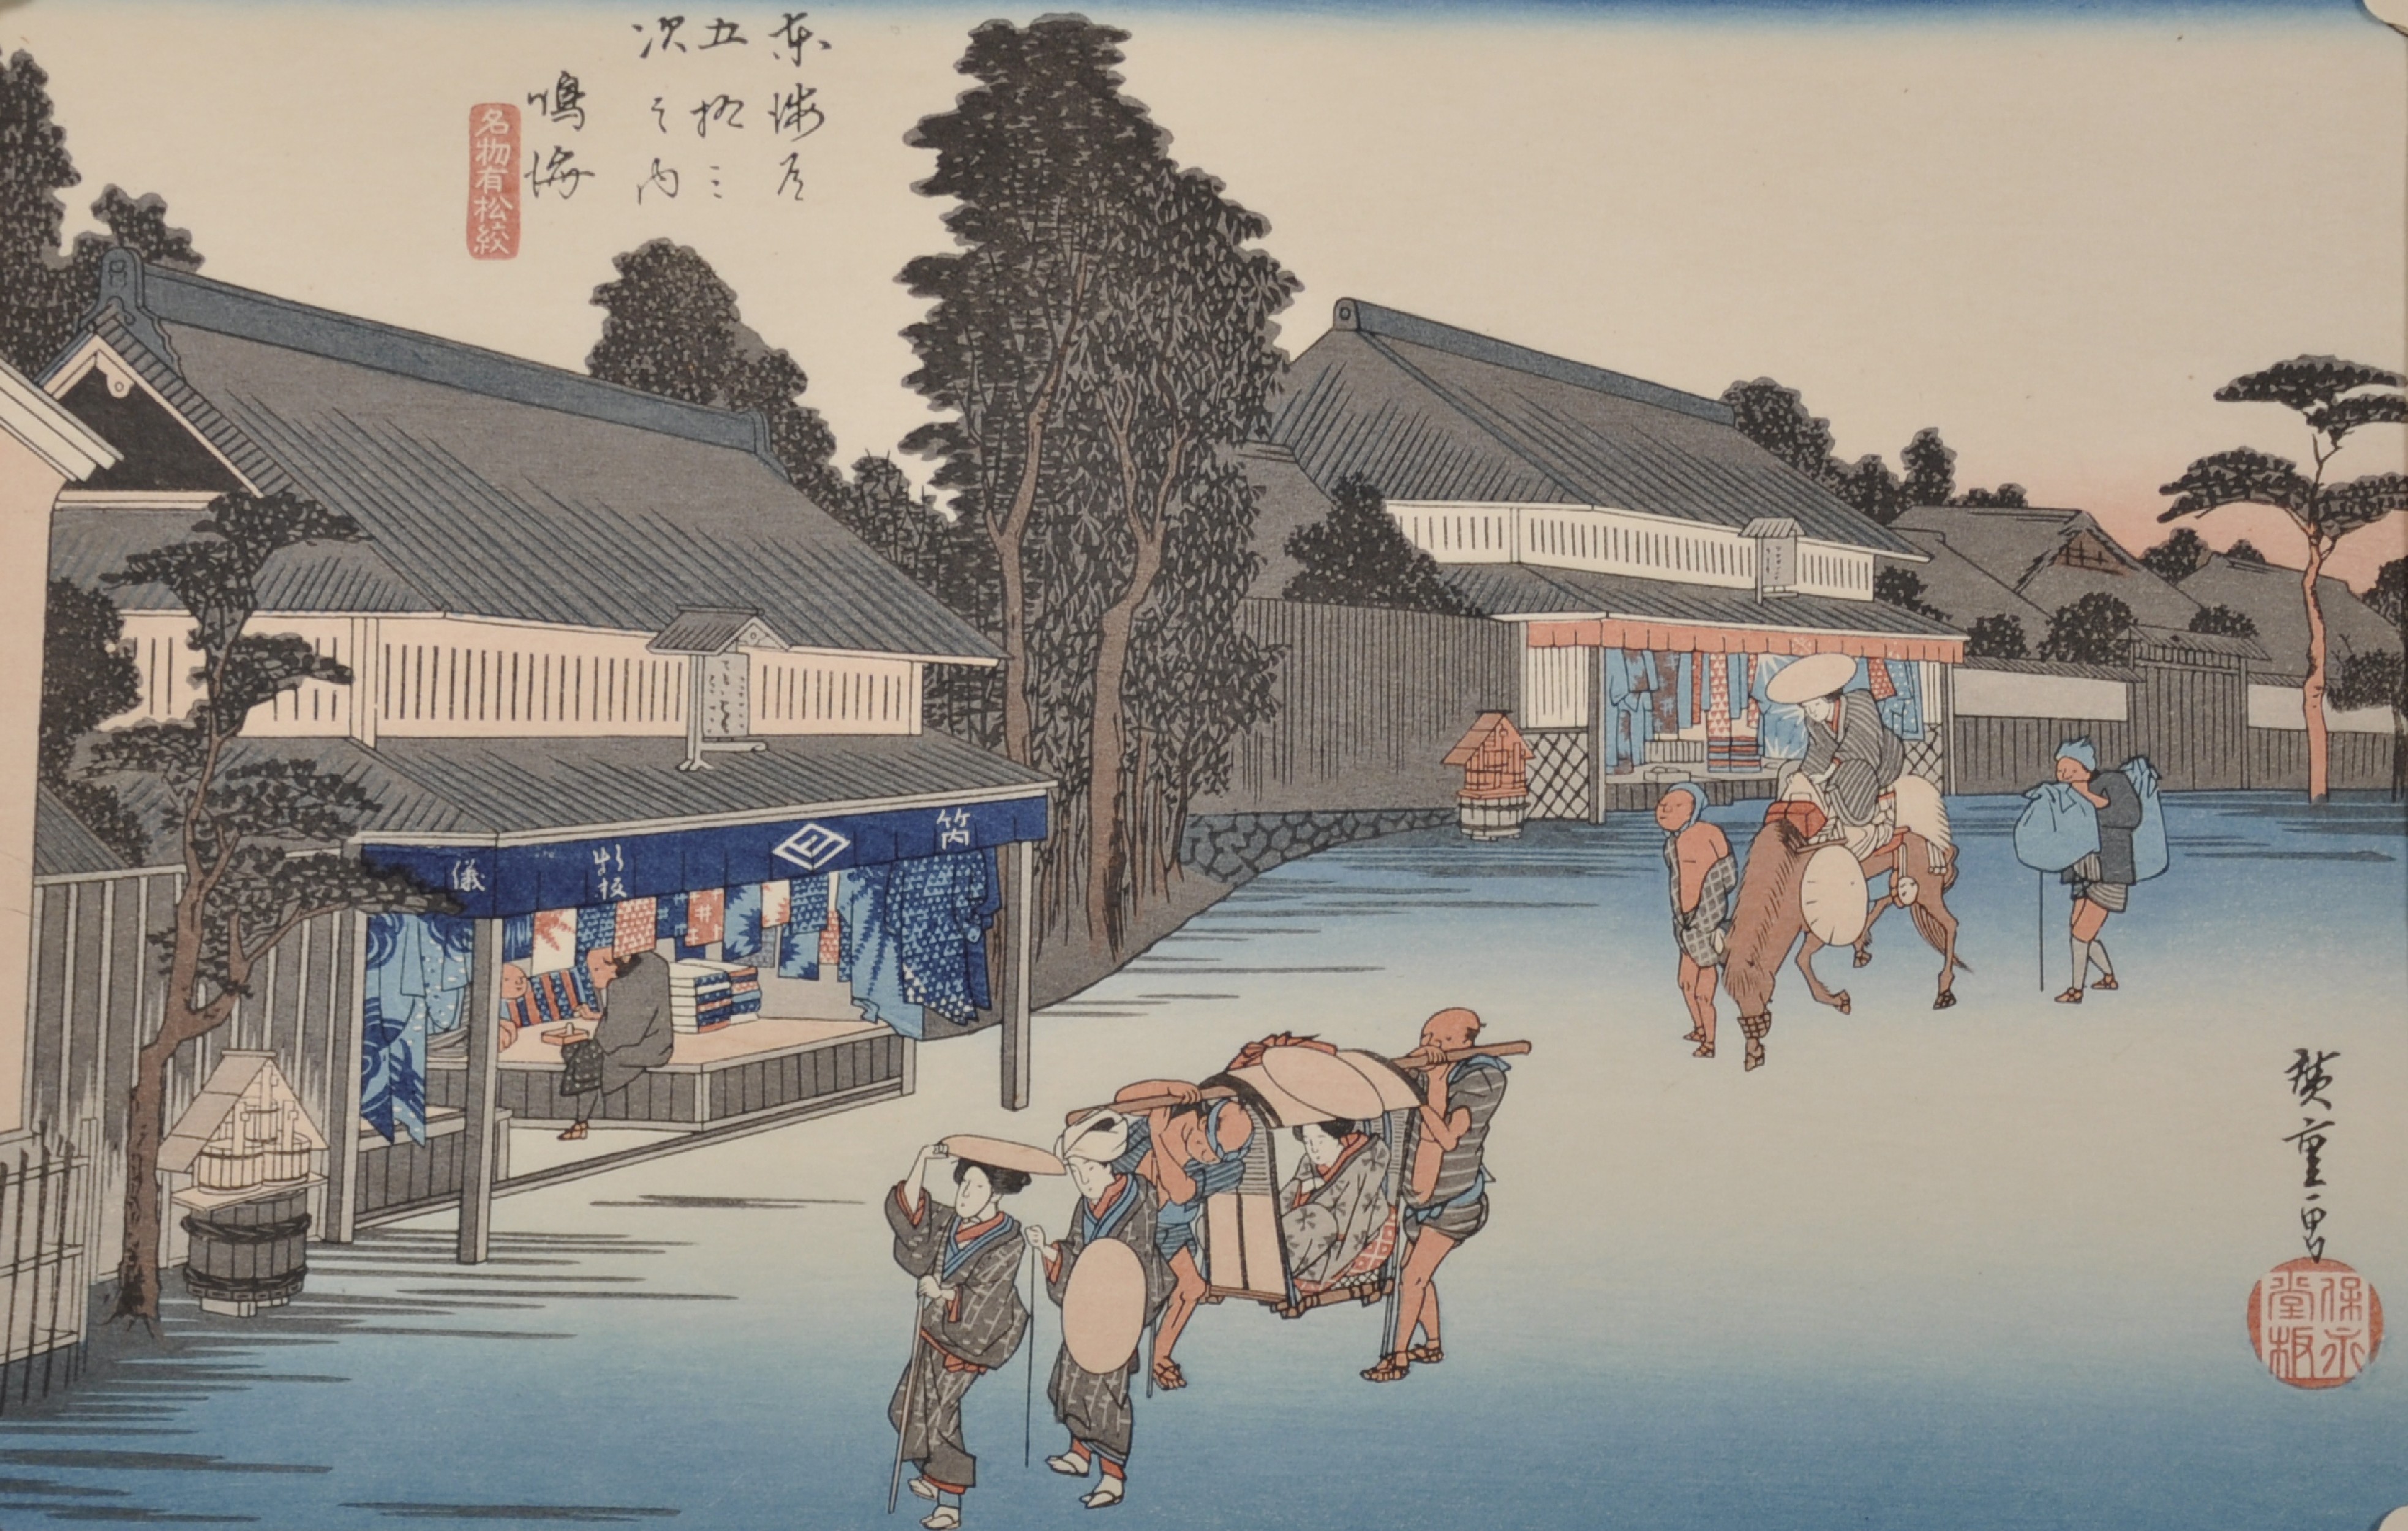 Hiroshige Utagawa (Ando) (1797-1858) Japanese. "Travellers and Kimono Material Shops at Narumi",